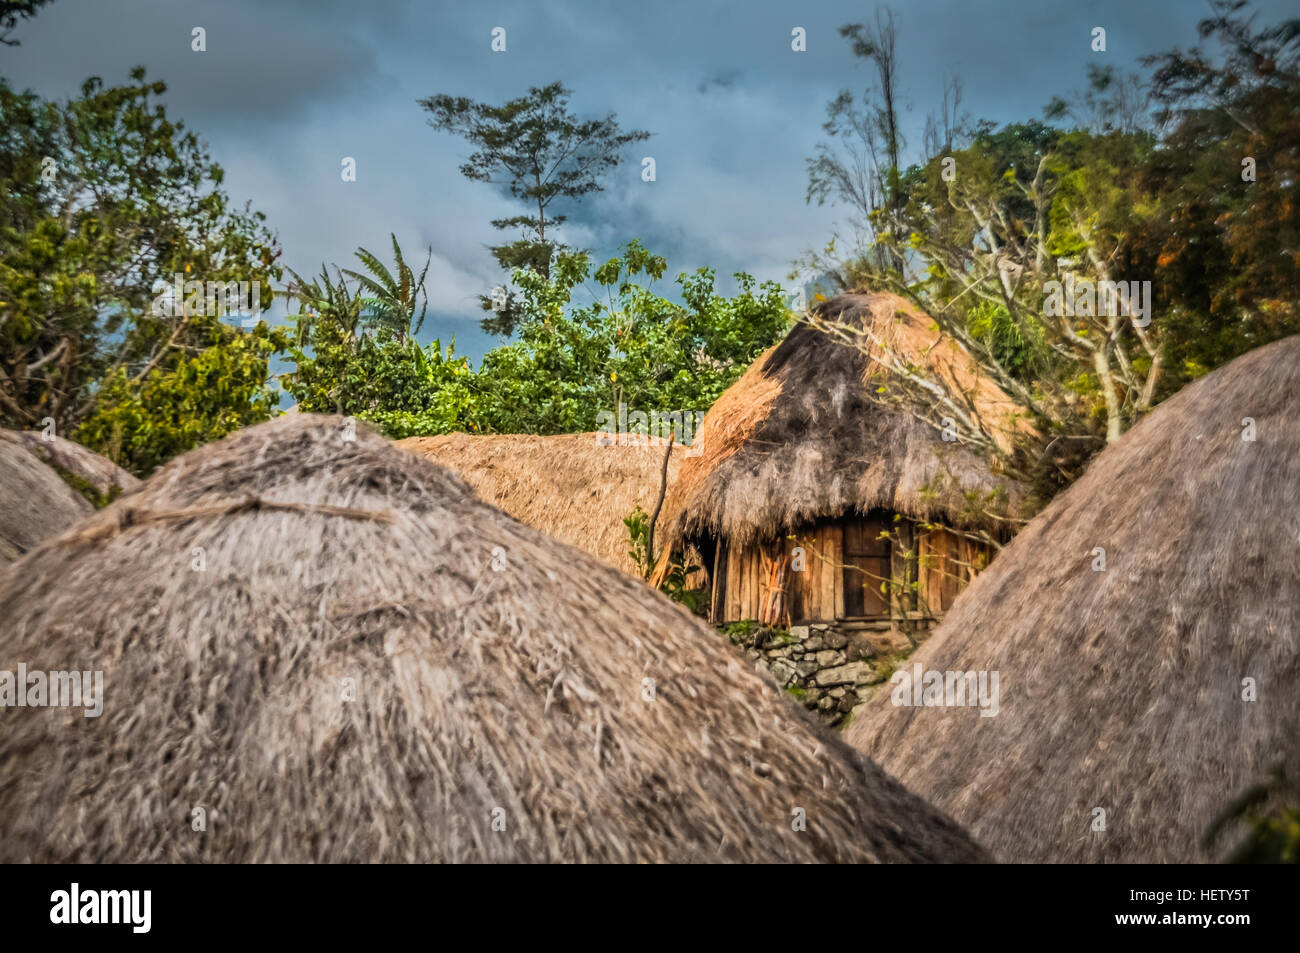 Foto von traditionellen Holzhäusern mit Stroh Dächer in Dorf in Dani Schaltung in der Nähe von Wamena, Papua, Indonesien. Stockfoto